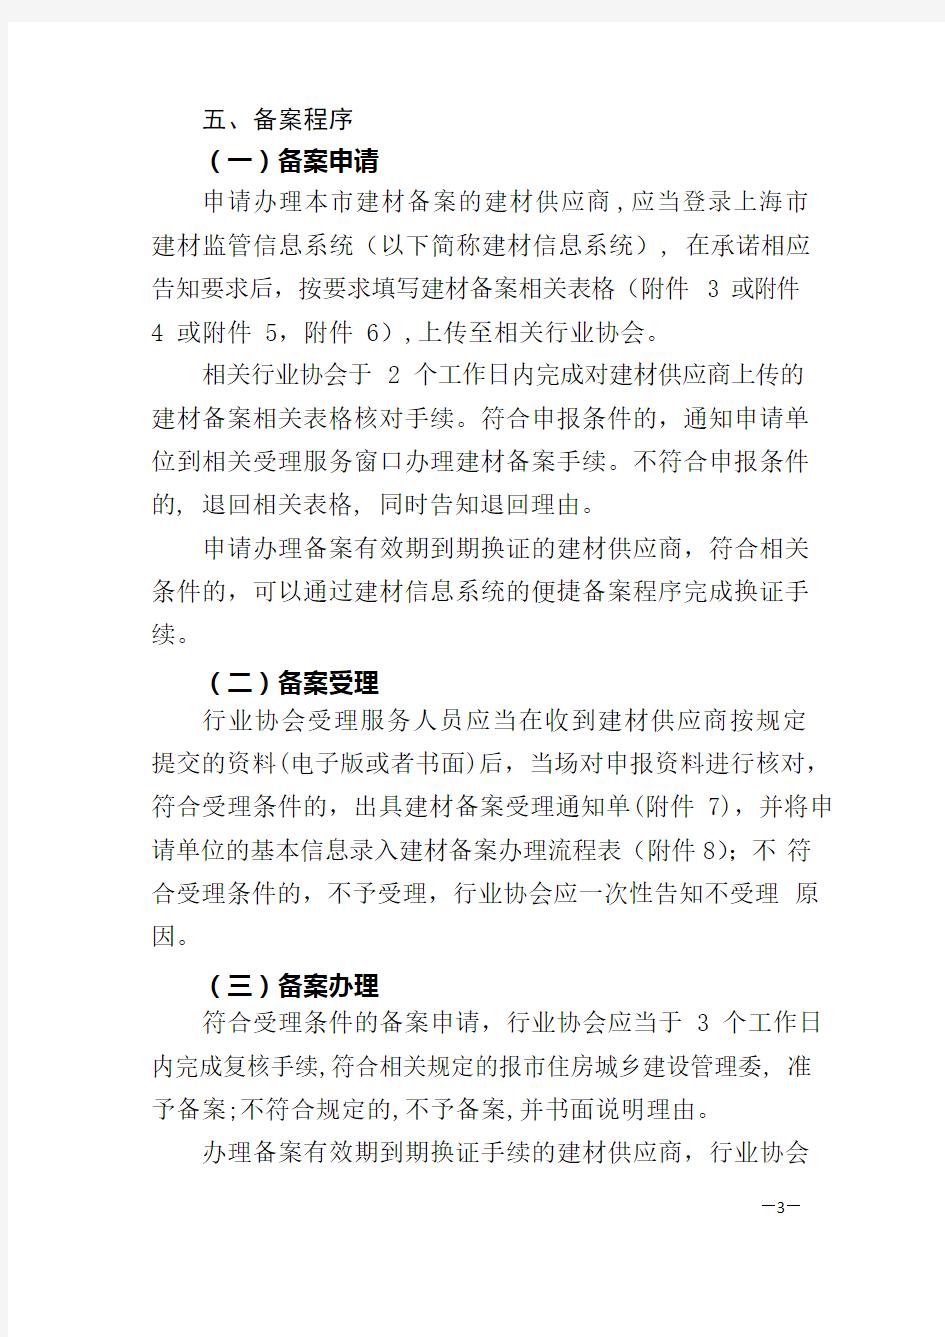 上海市建设工程材料备案办事指南